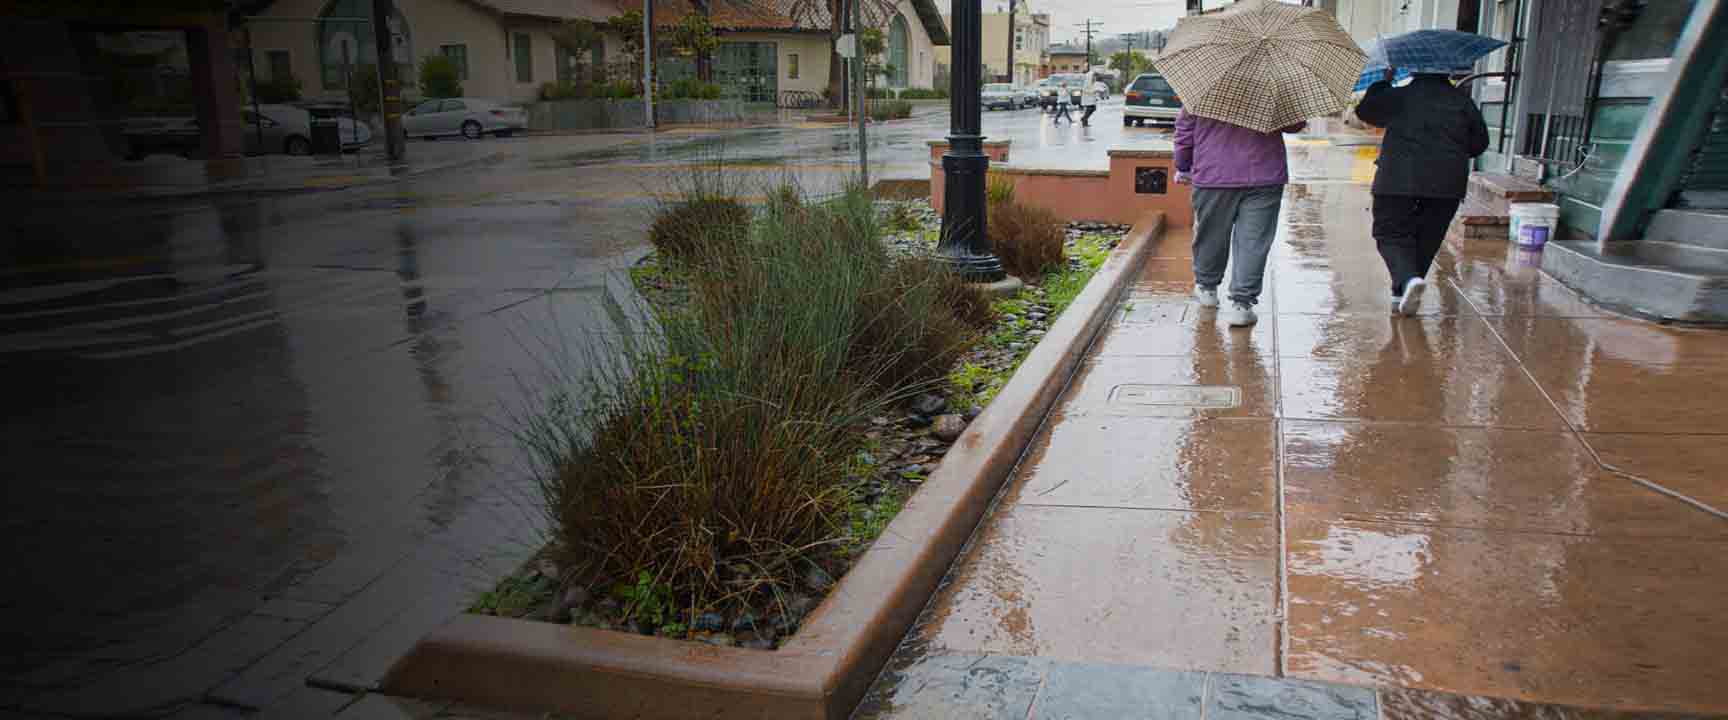 Люди гуляют под дождем рядом с боковым садом, который служит зеленой инфраструктурой для управления стоком дождевой воды.